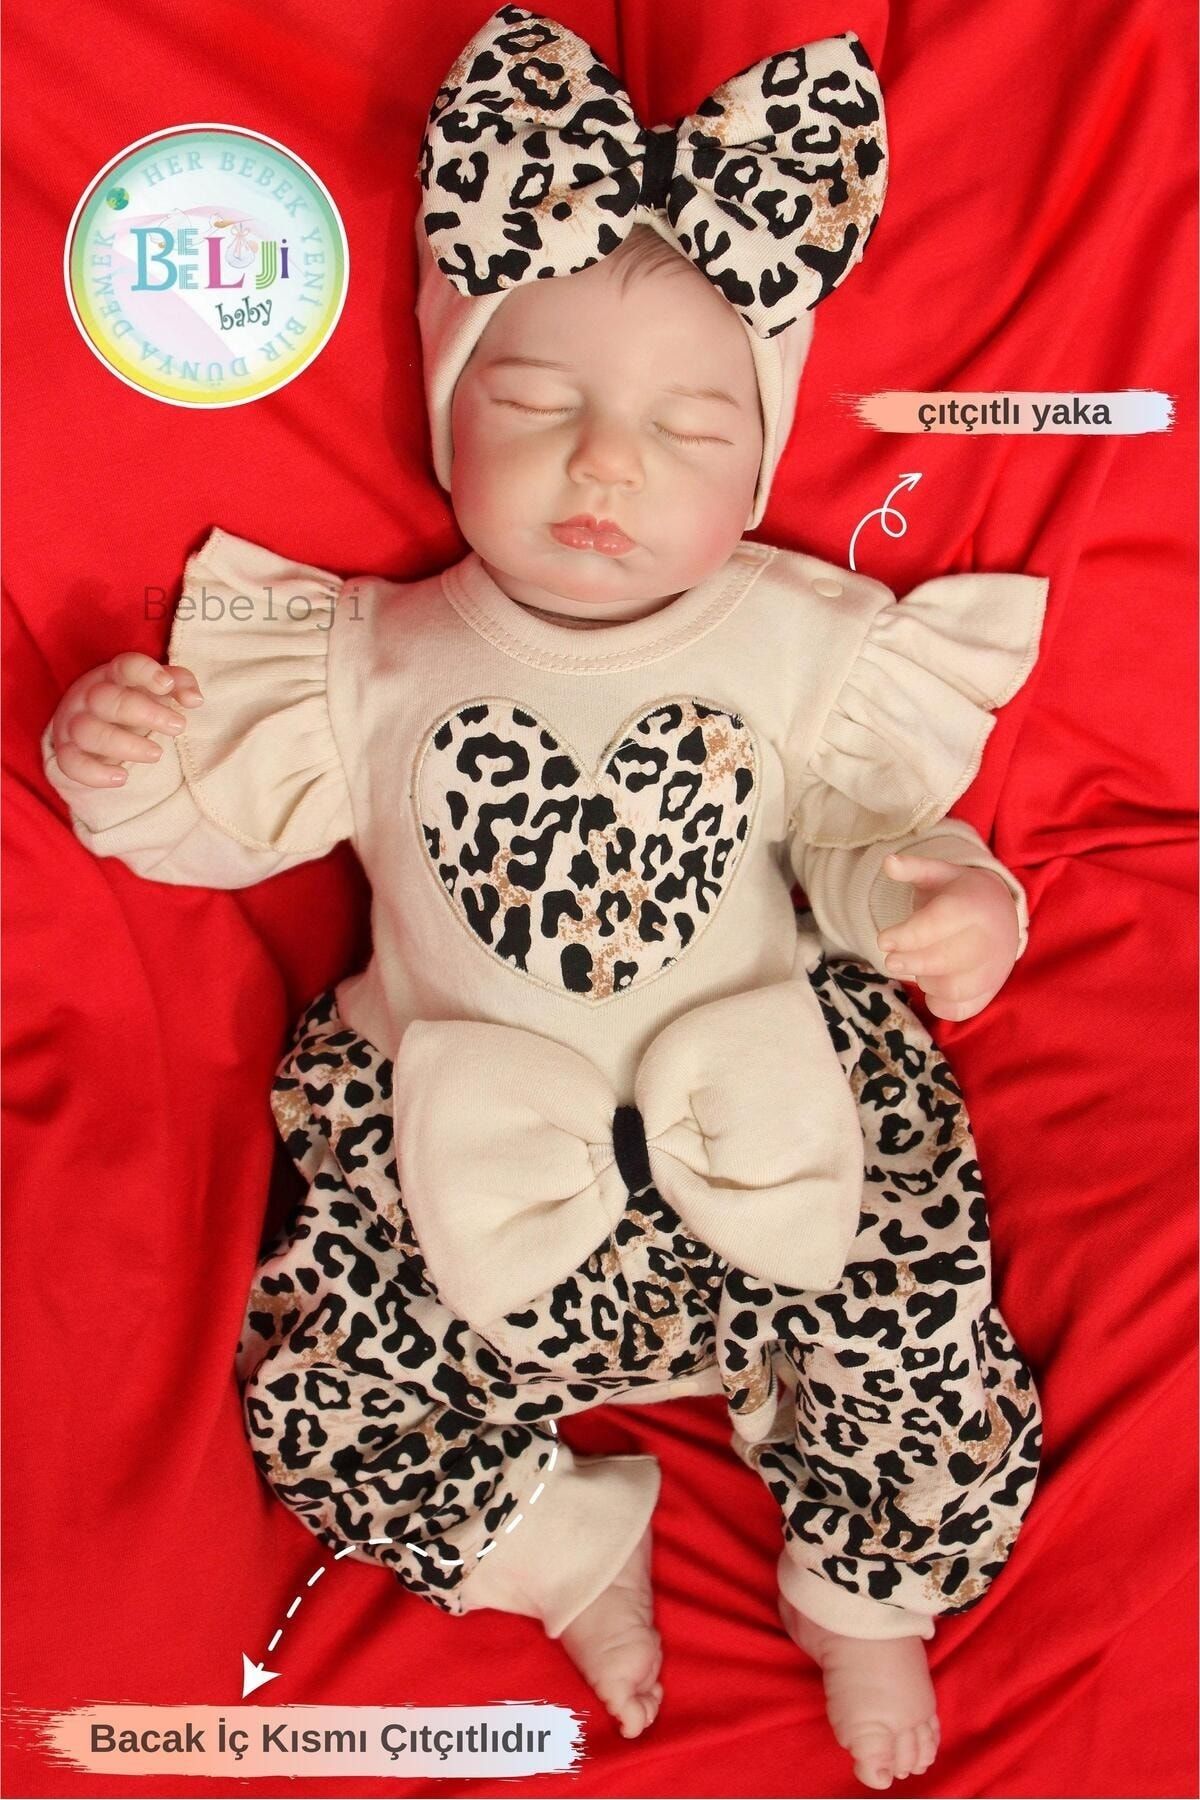 Bebeloji Baby Lena Fiyonklu Leoparlı Kız Bebek Tulum Bandana Set ( Yenidoğan tulum yenidoğan kıyafeti )